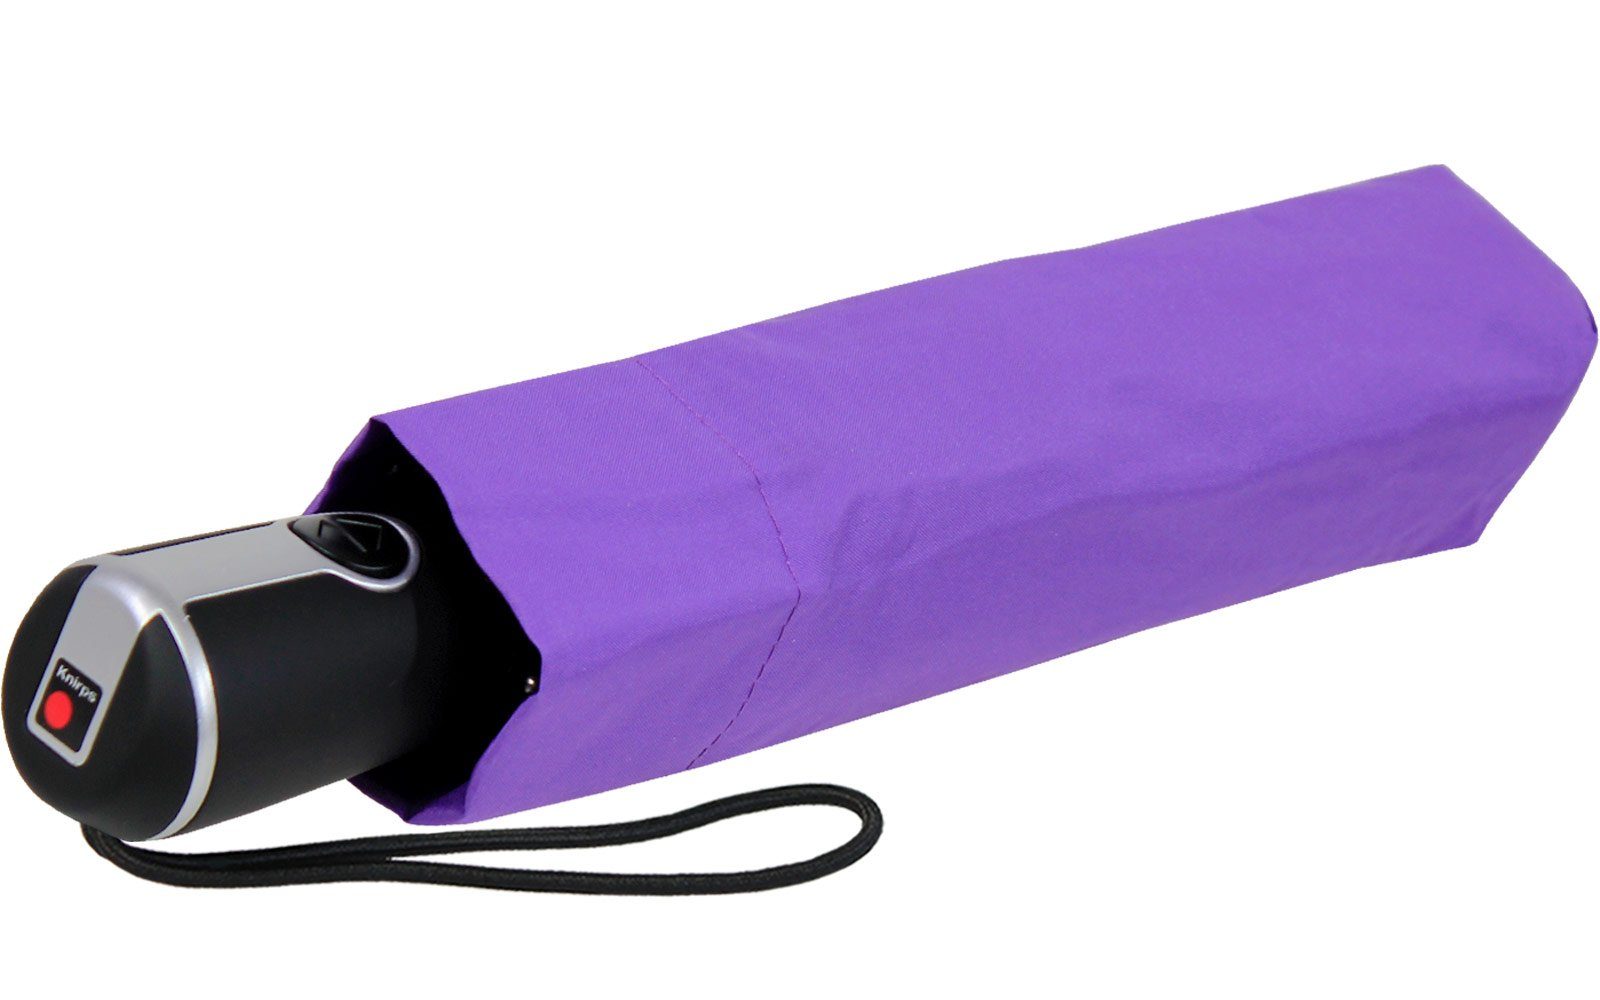 Knirps® Taschenregenschirm Large Duomatic mit große, der Auf-Zu-Automatik, violett Begleiter stabile